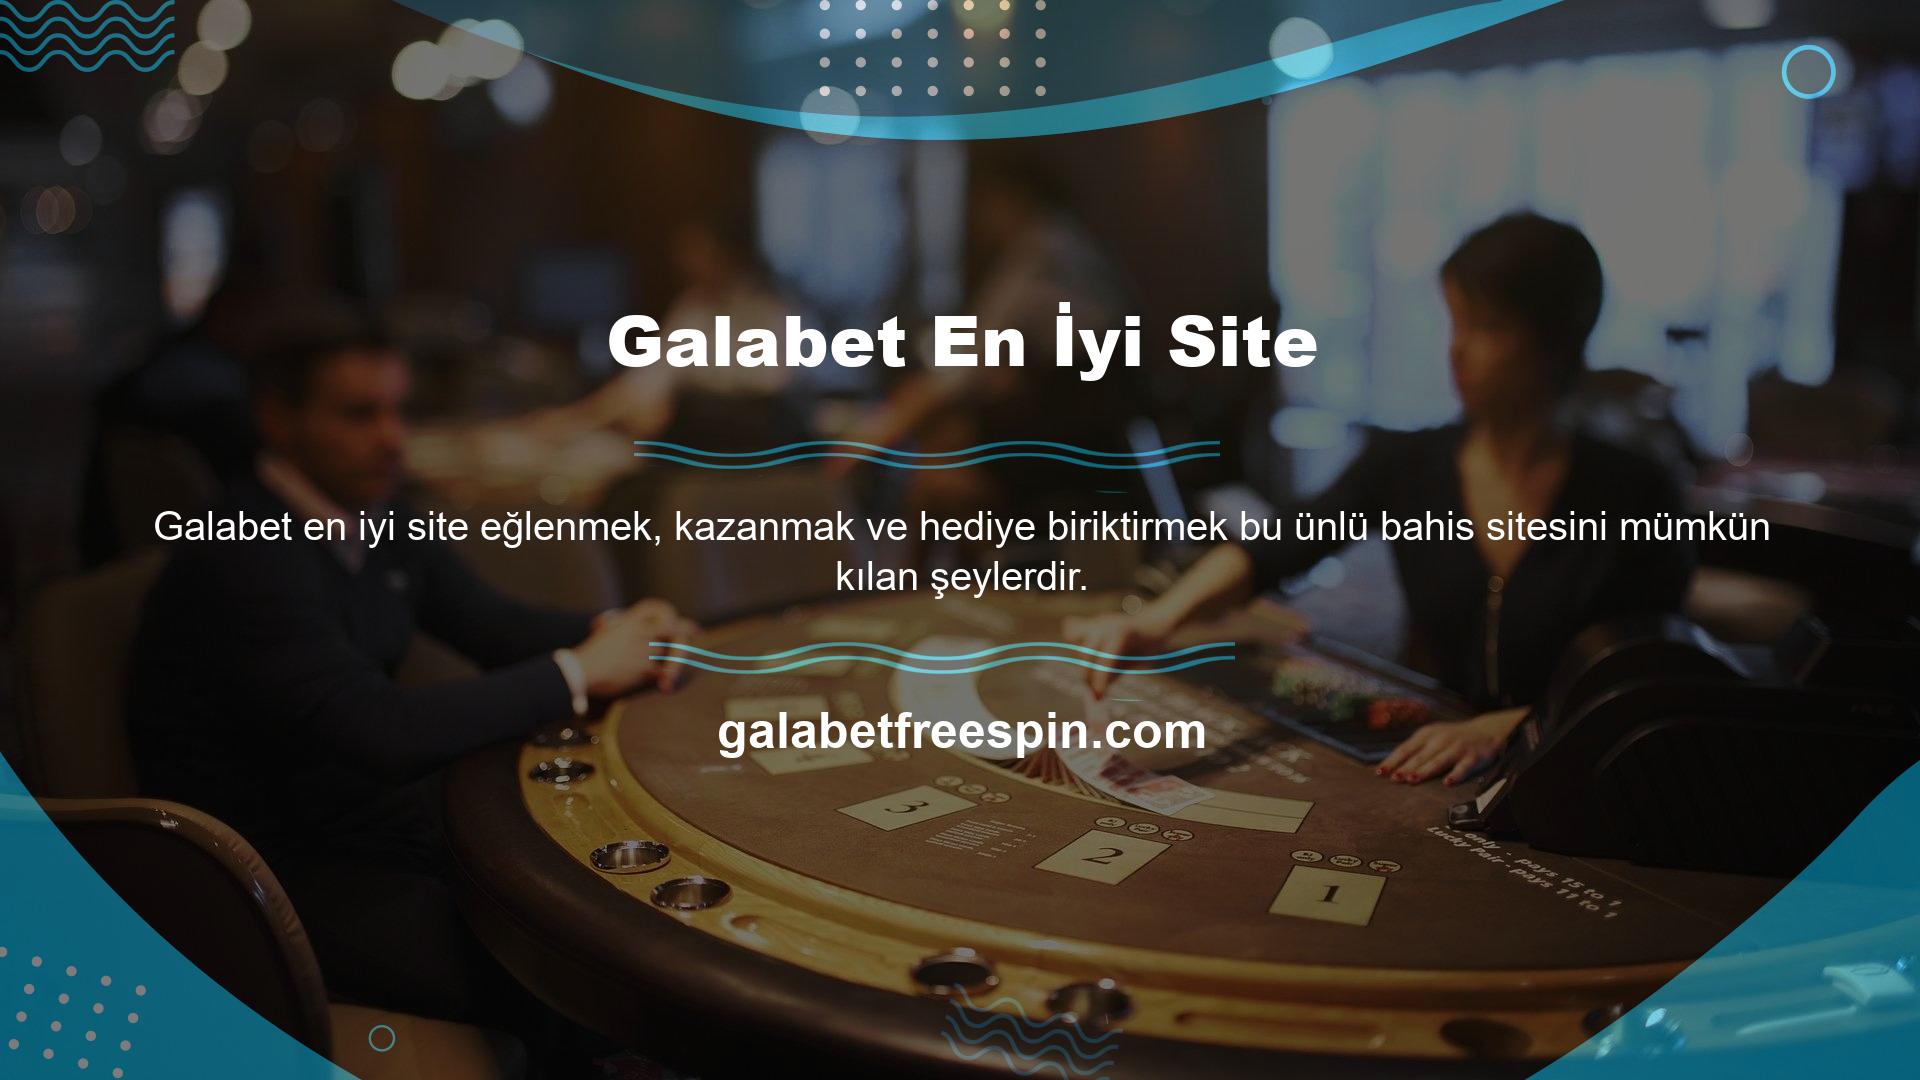 En popüler casino sitelerinden biri olan Galabet, üyeliğini arttırıyor, çeşitli etkinliklere ev sahipliği yapıyor ve üyelerine kaliteli hizmet sunuyor